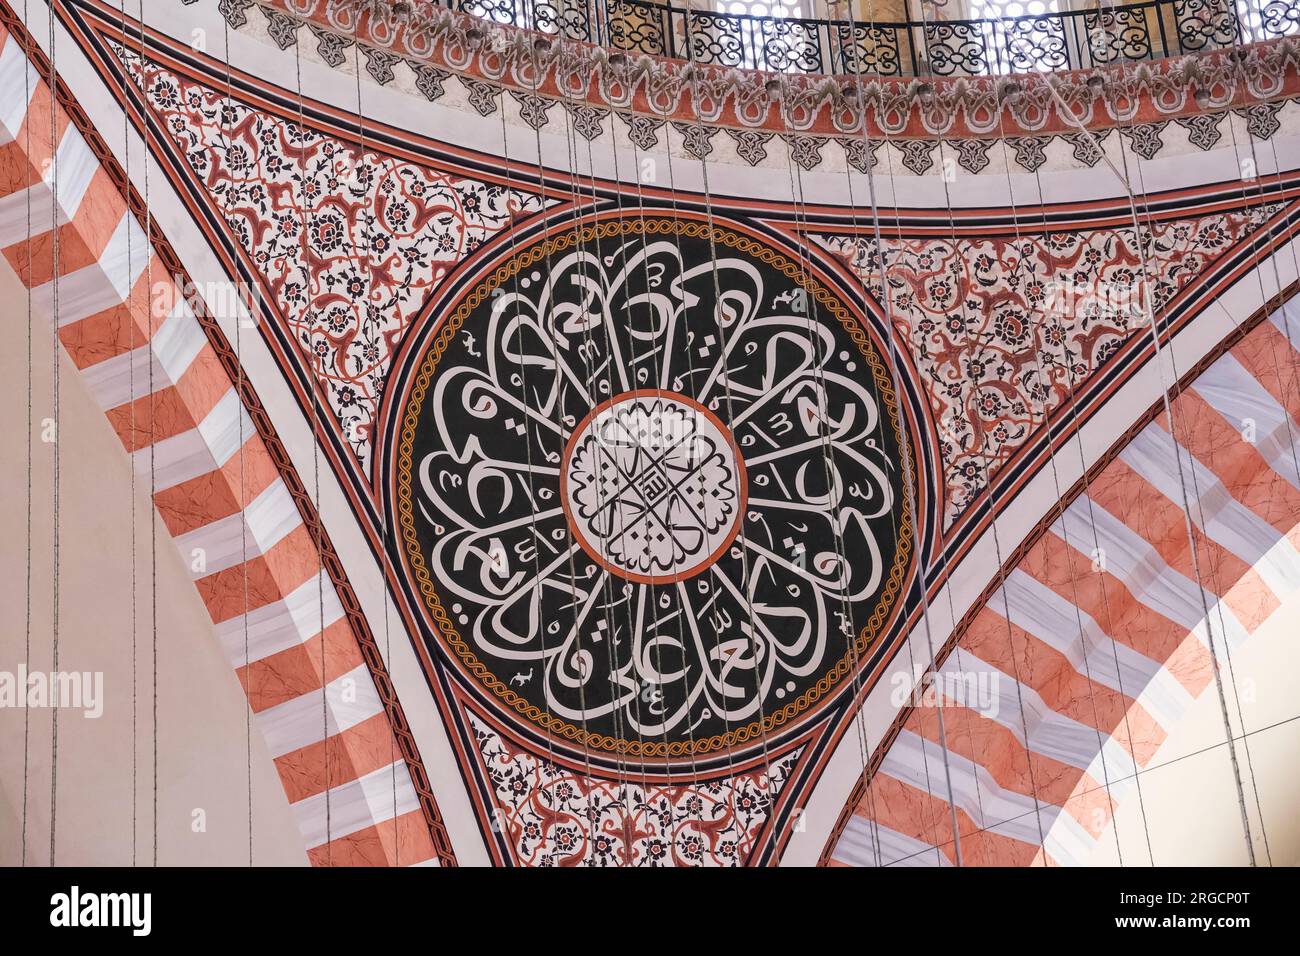 Istanbul, Turchia, Turkiye. Decorazioni in calligrafia e disegni floreali nelle pareti della Moschea di Solimano la magnifica Moschea di Solimano. Foto Stock